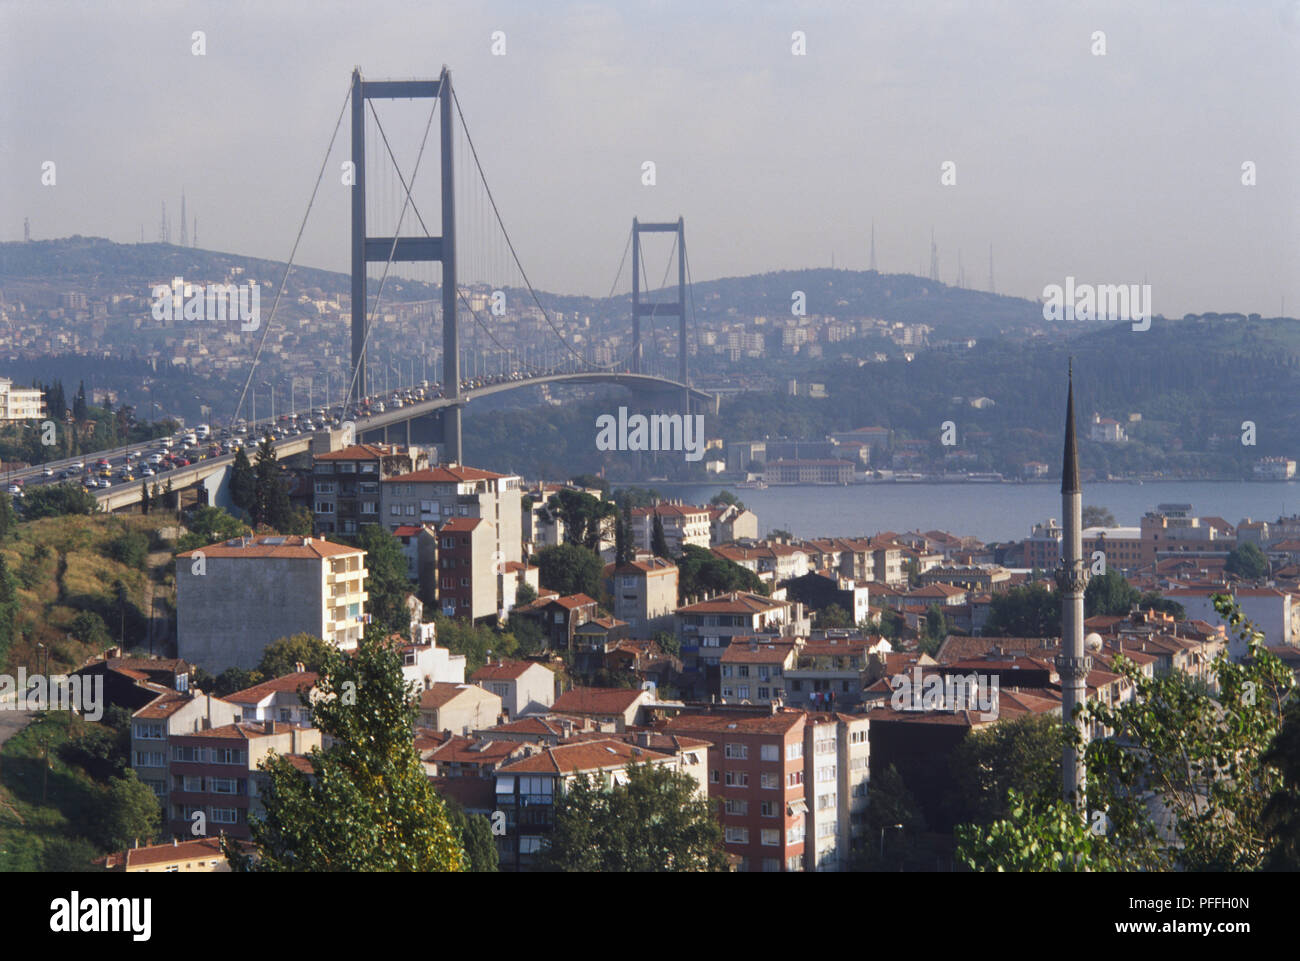 Asien, Türkei, Istanbul, den Bosphorus Hängebrücke überspannt den Fluss zwischen Ortakoy und Beylerbeyi, Stadtbild und Minarett im Vordergrund, viele Fahrzeuge über die Brücke fahren, moderne Gebäude der opposide Bank eingehüllt in Nebel im Hintergrund. Stockfoto